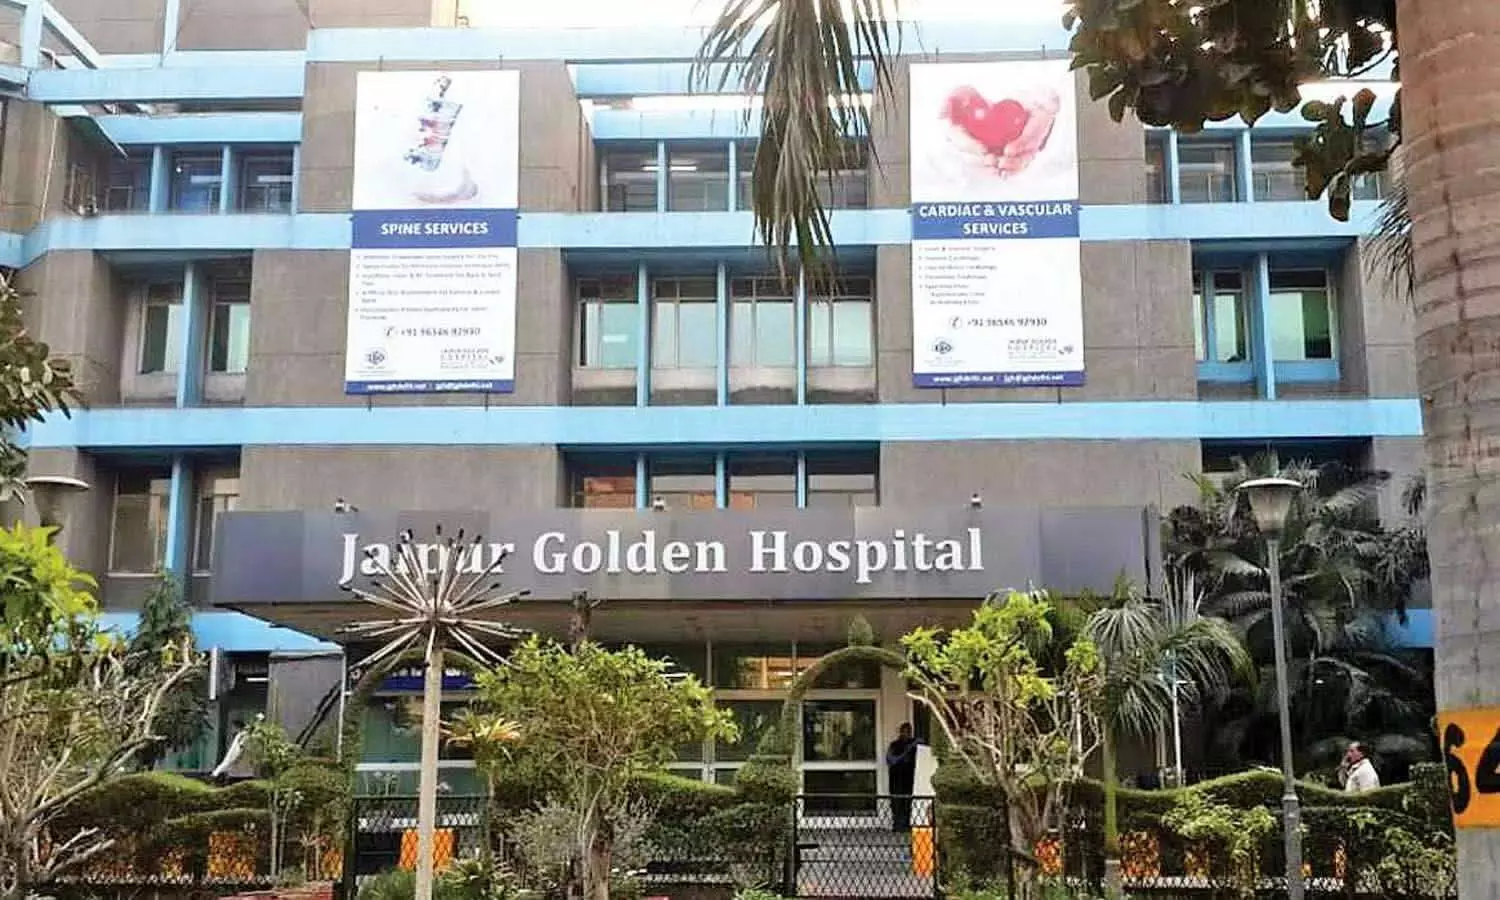 ऑक्सीजन की कमी से मचा कोहराम, दिल्ली के अस्पताल में 20 मरीजों की मौत